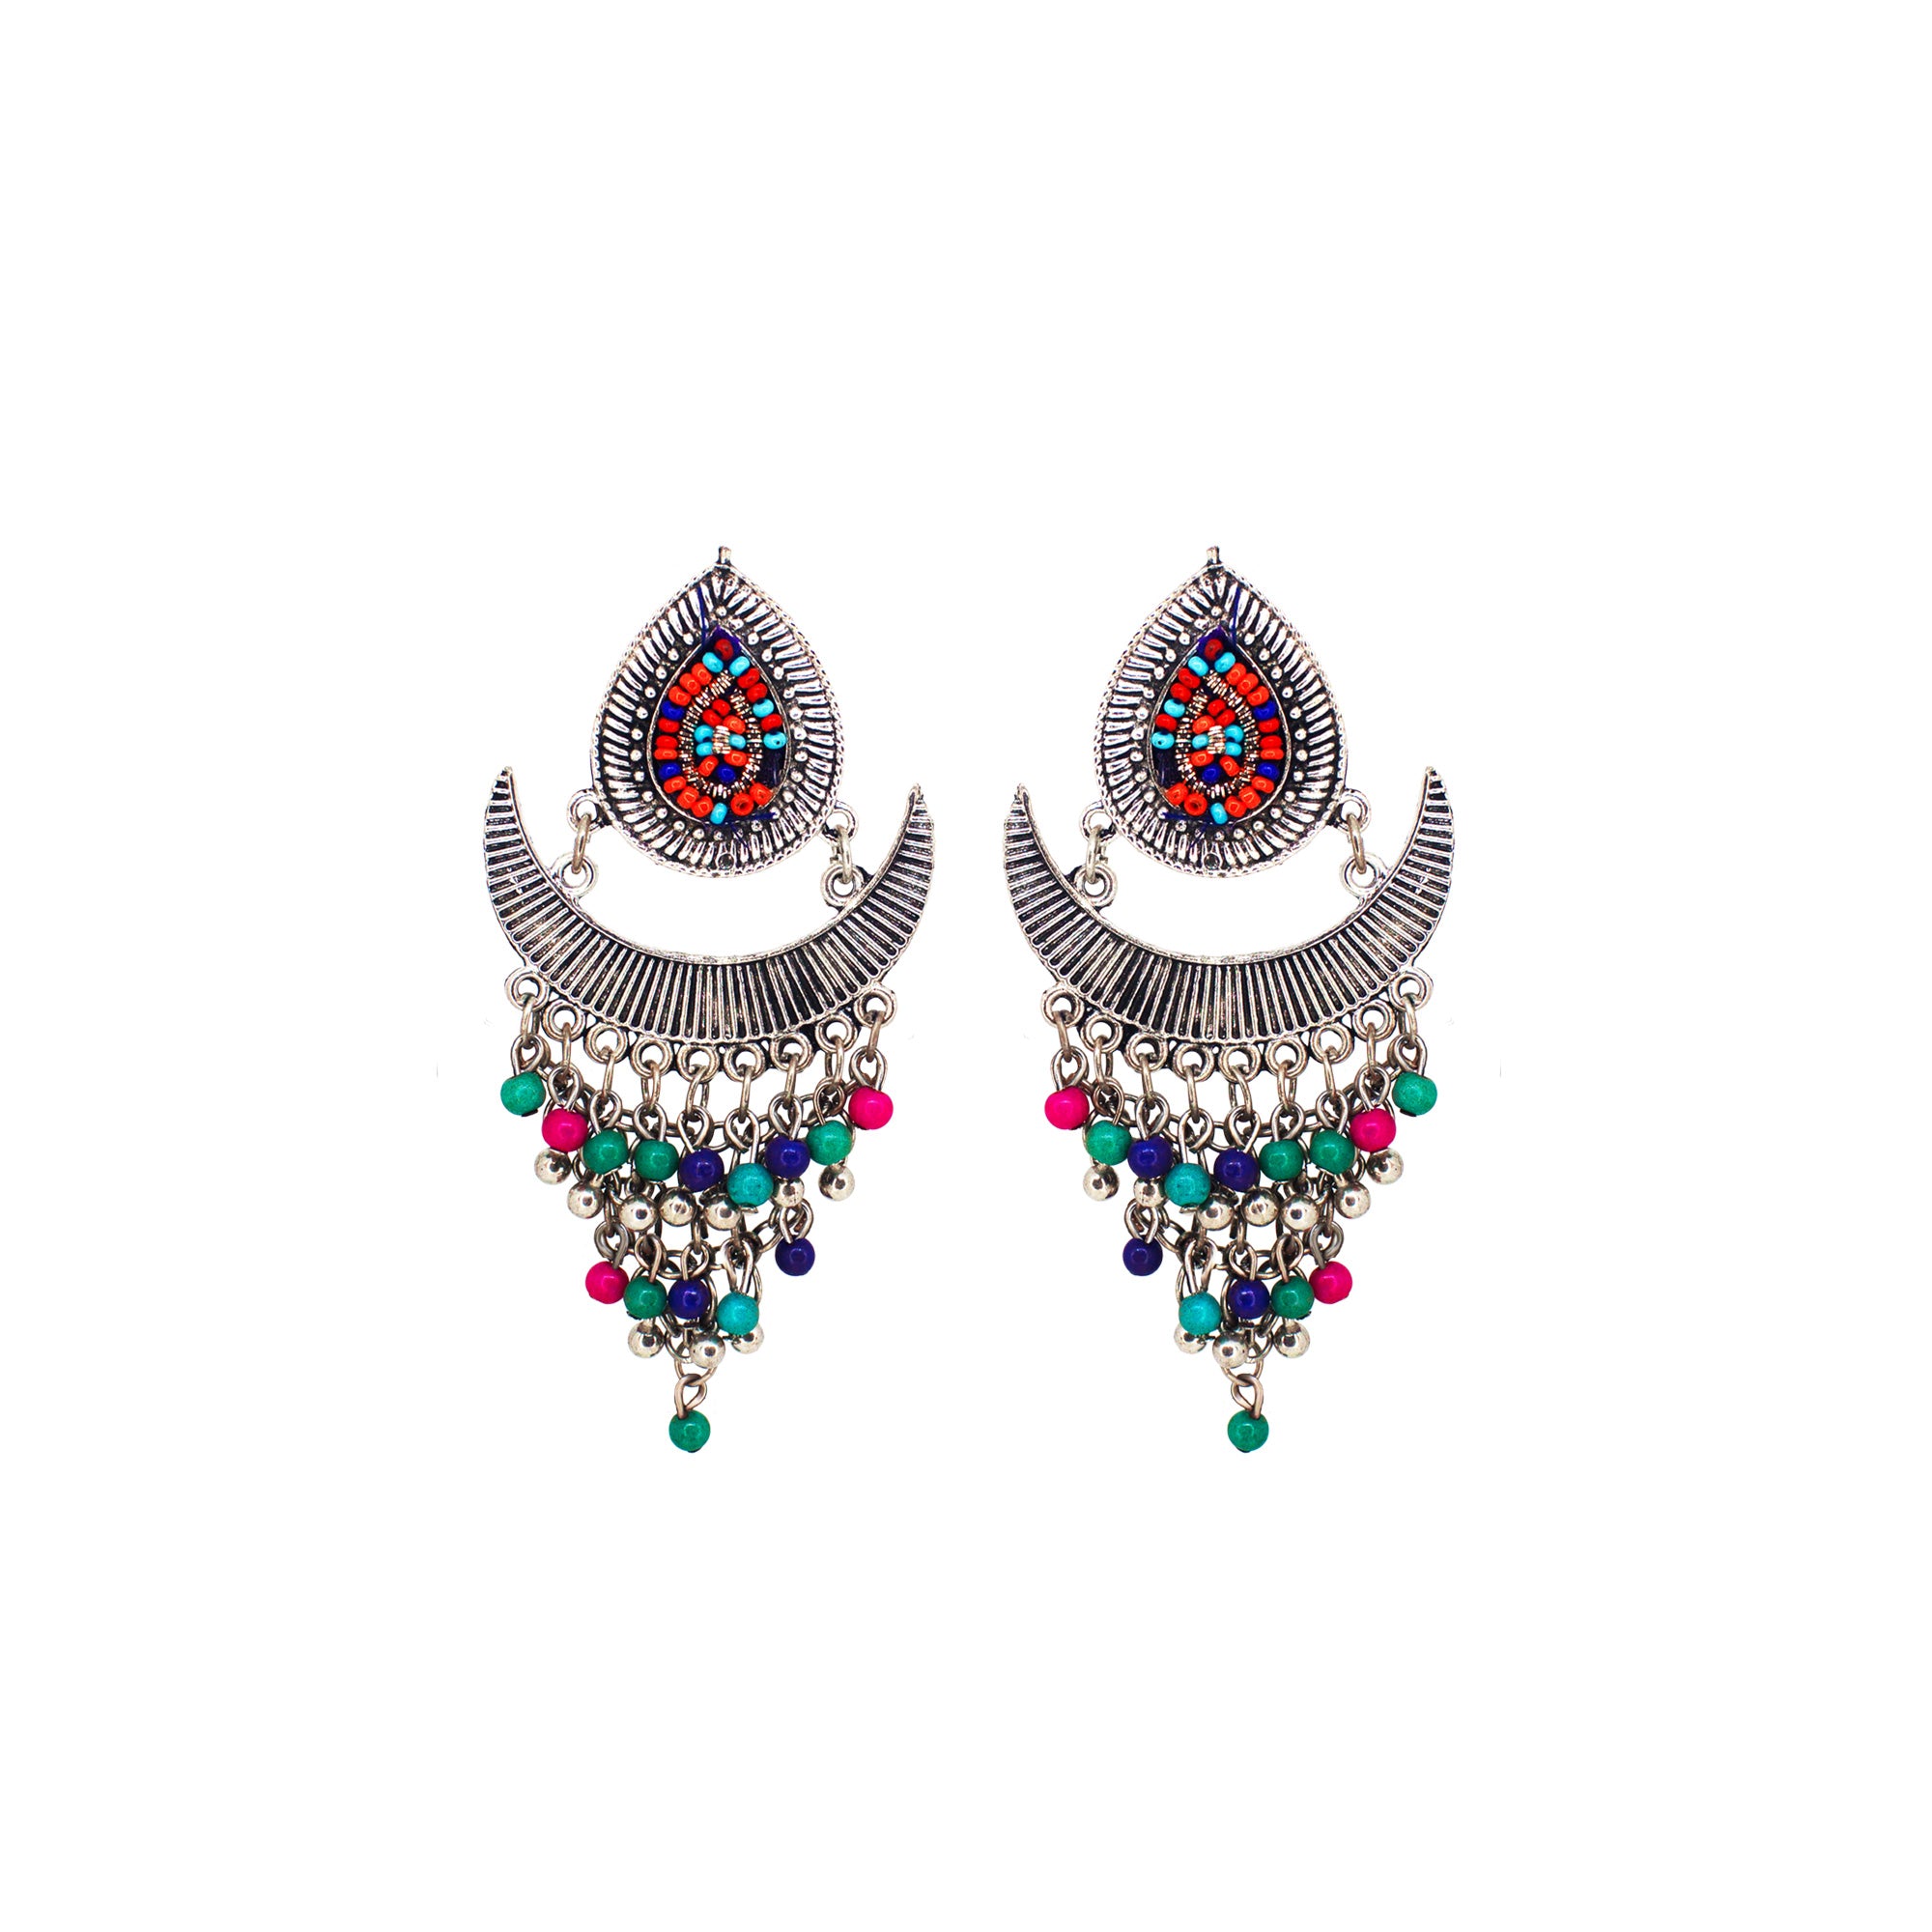 Abhinn Silver Oxidised Temple Design Beaded Dangler Earrings For Women